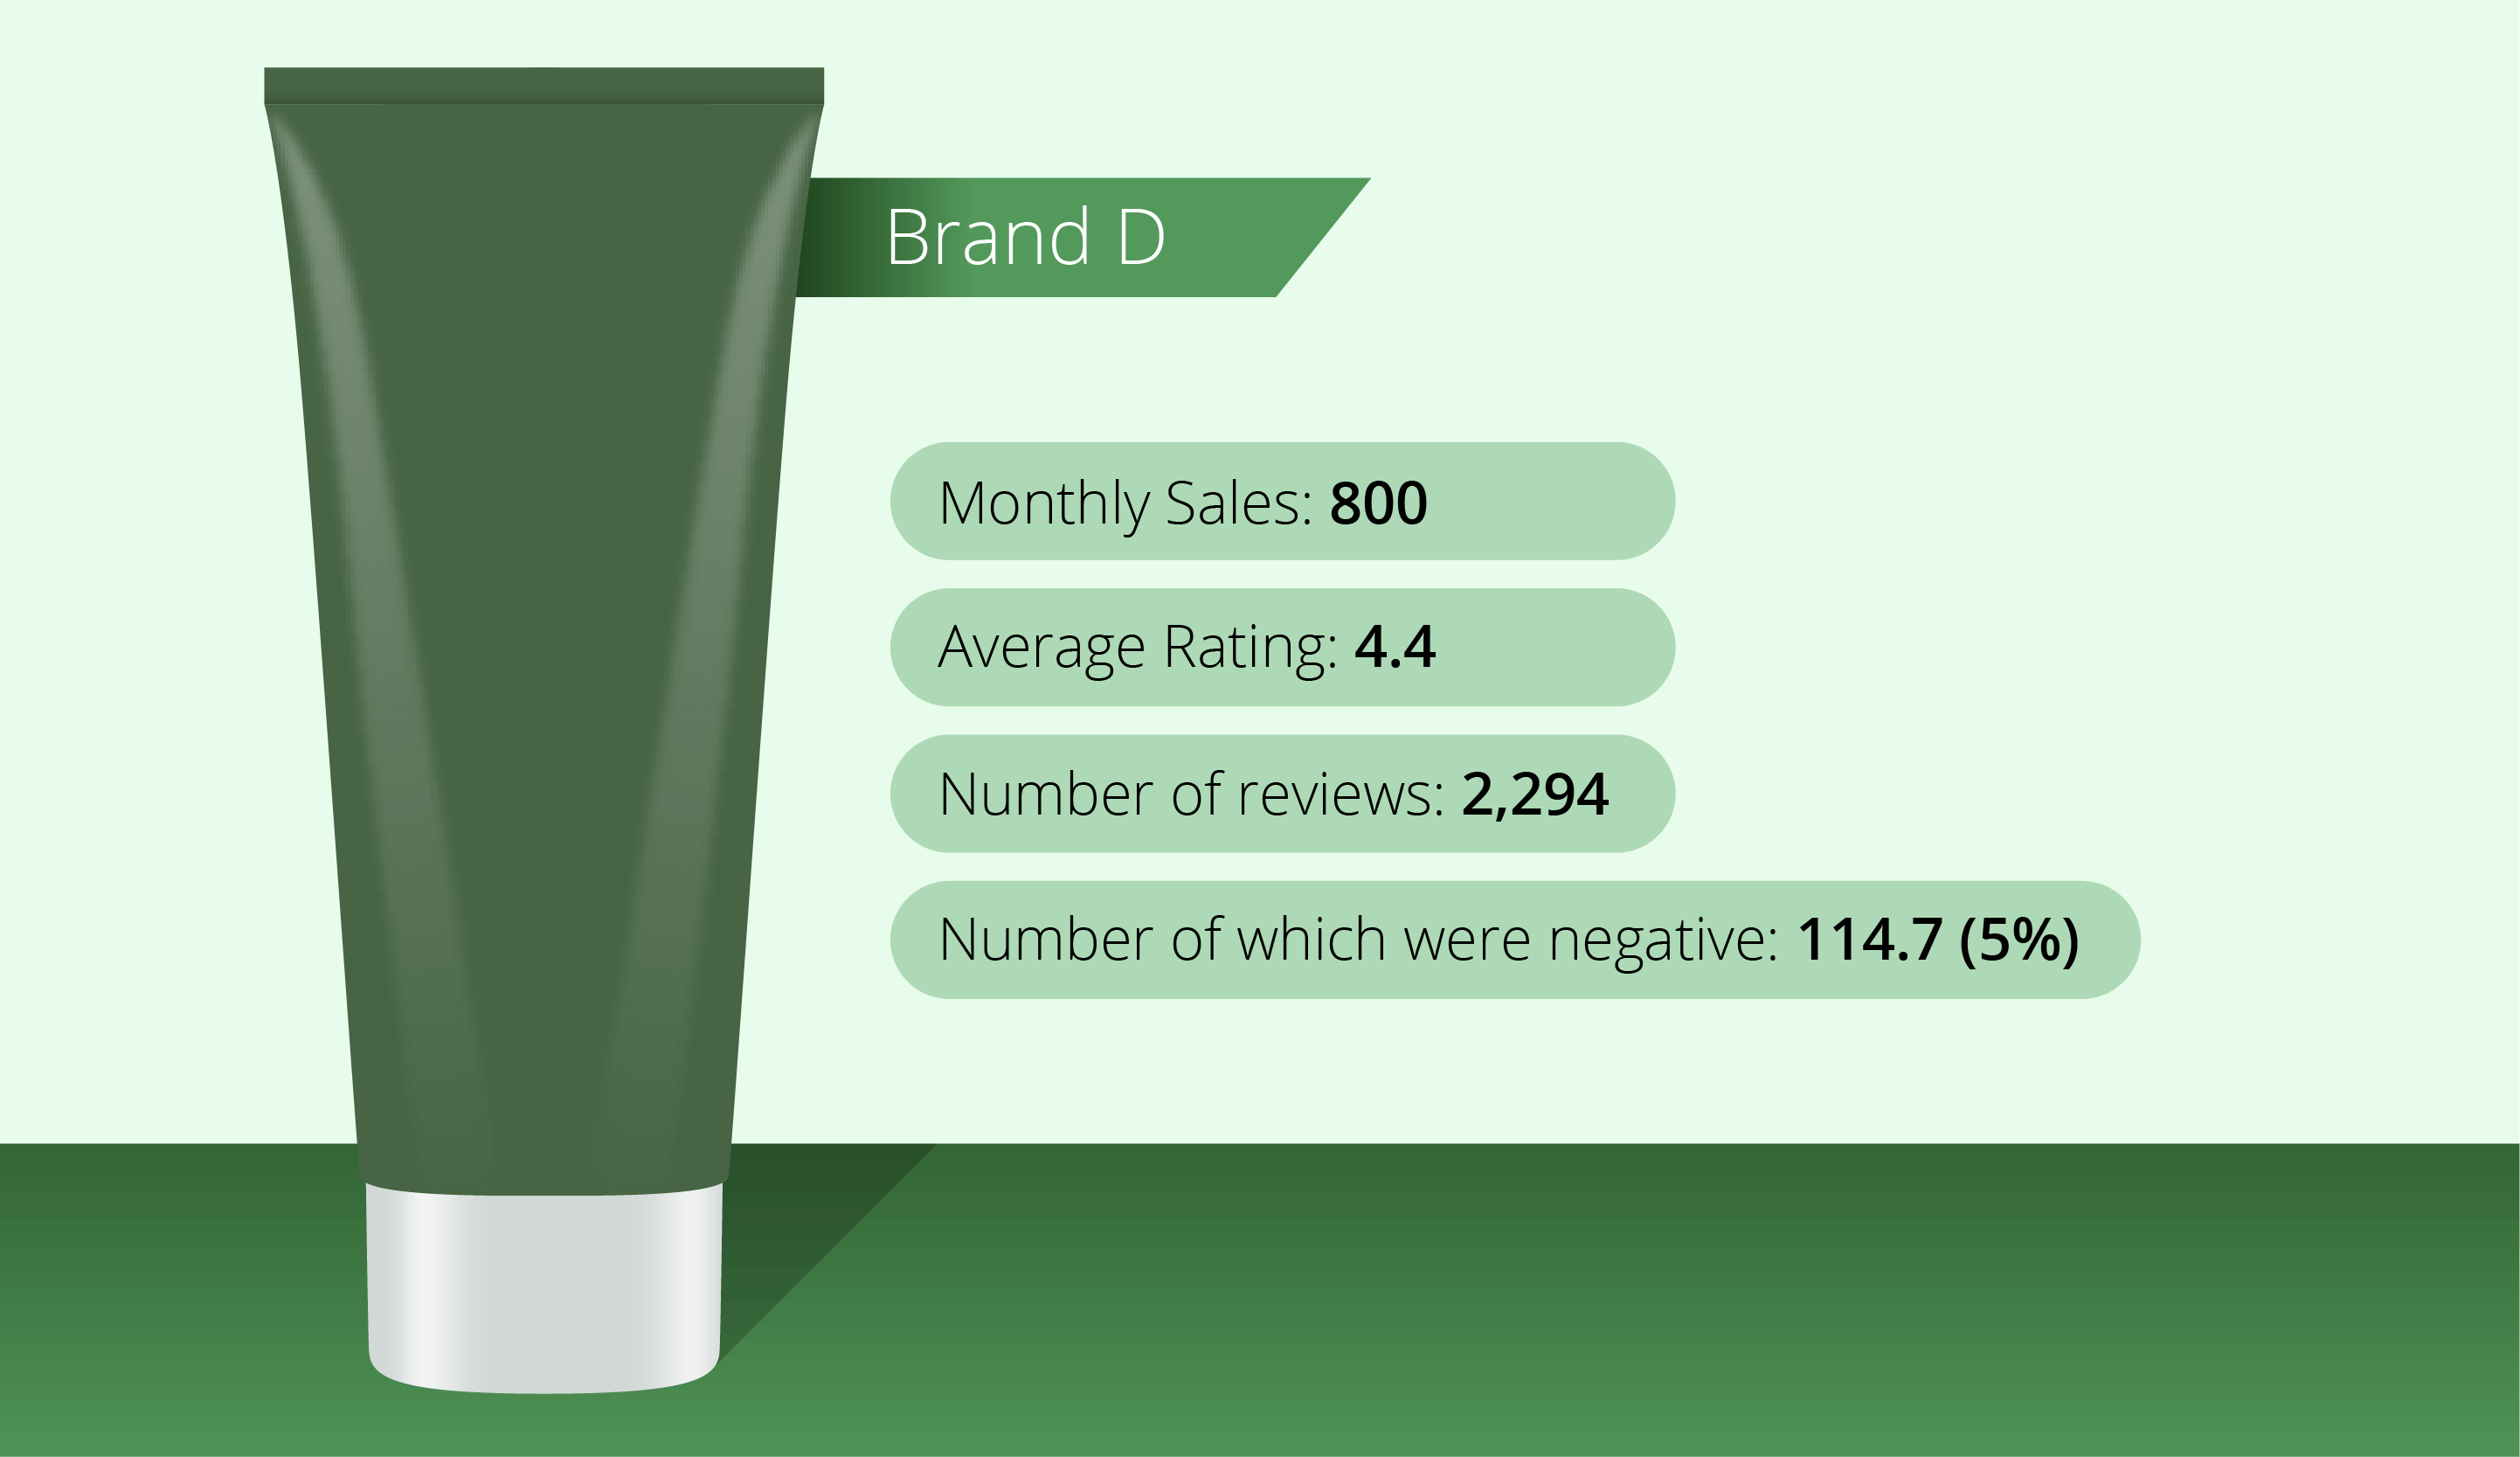 Brand D - caffeine shampoo